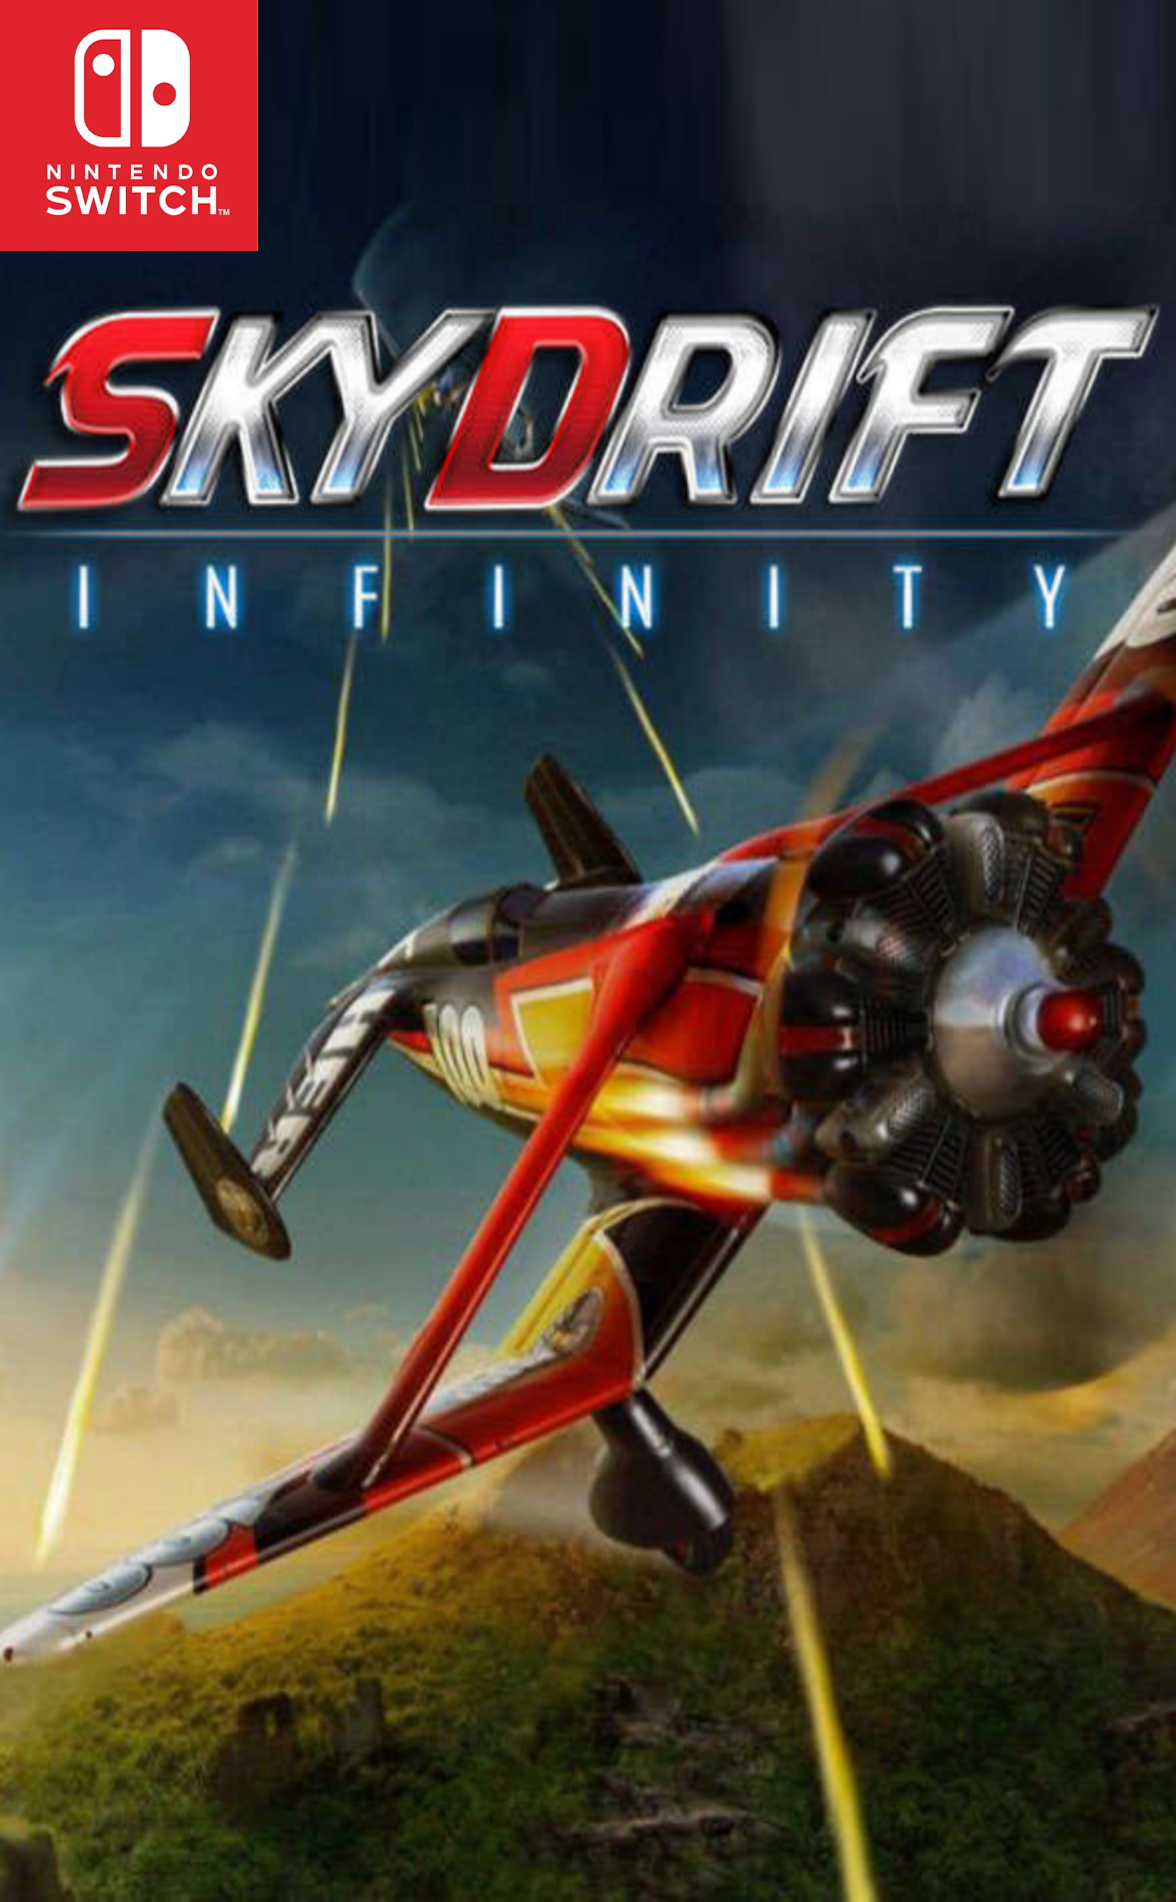 skydrift infinity publisher